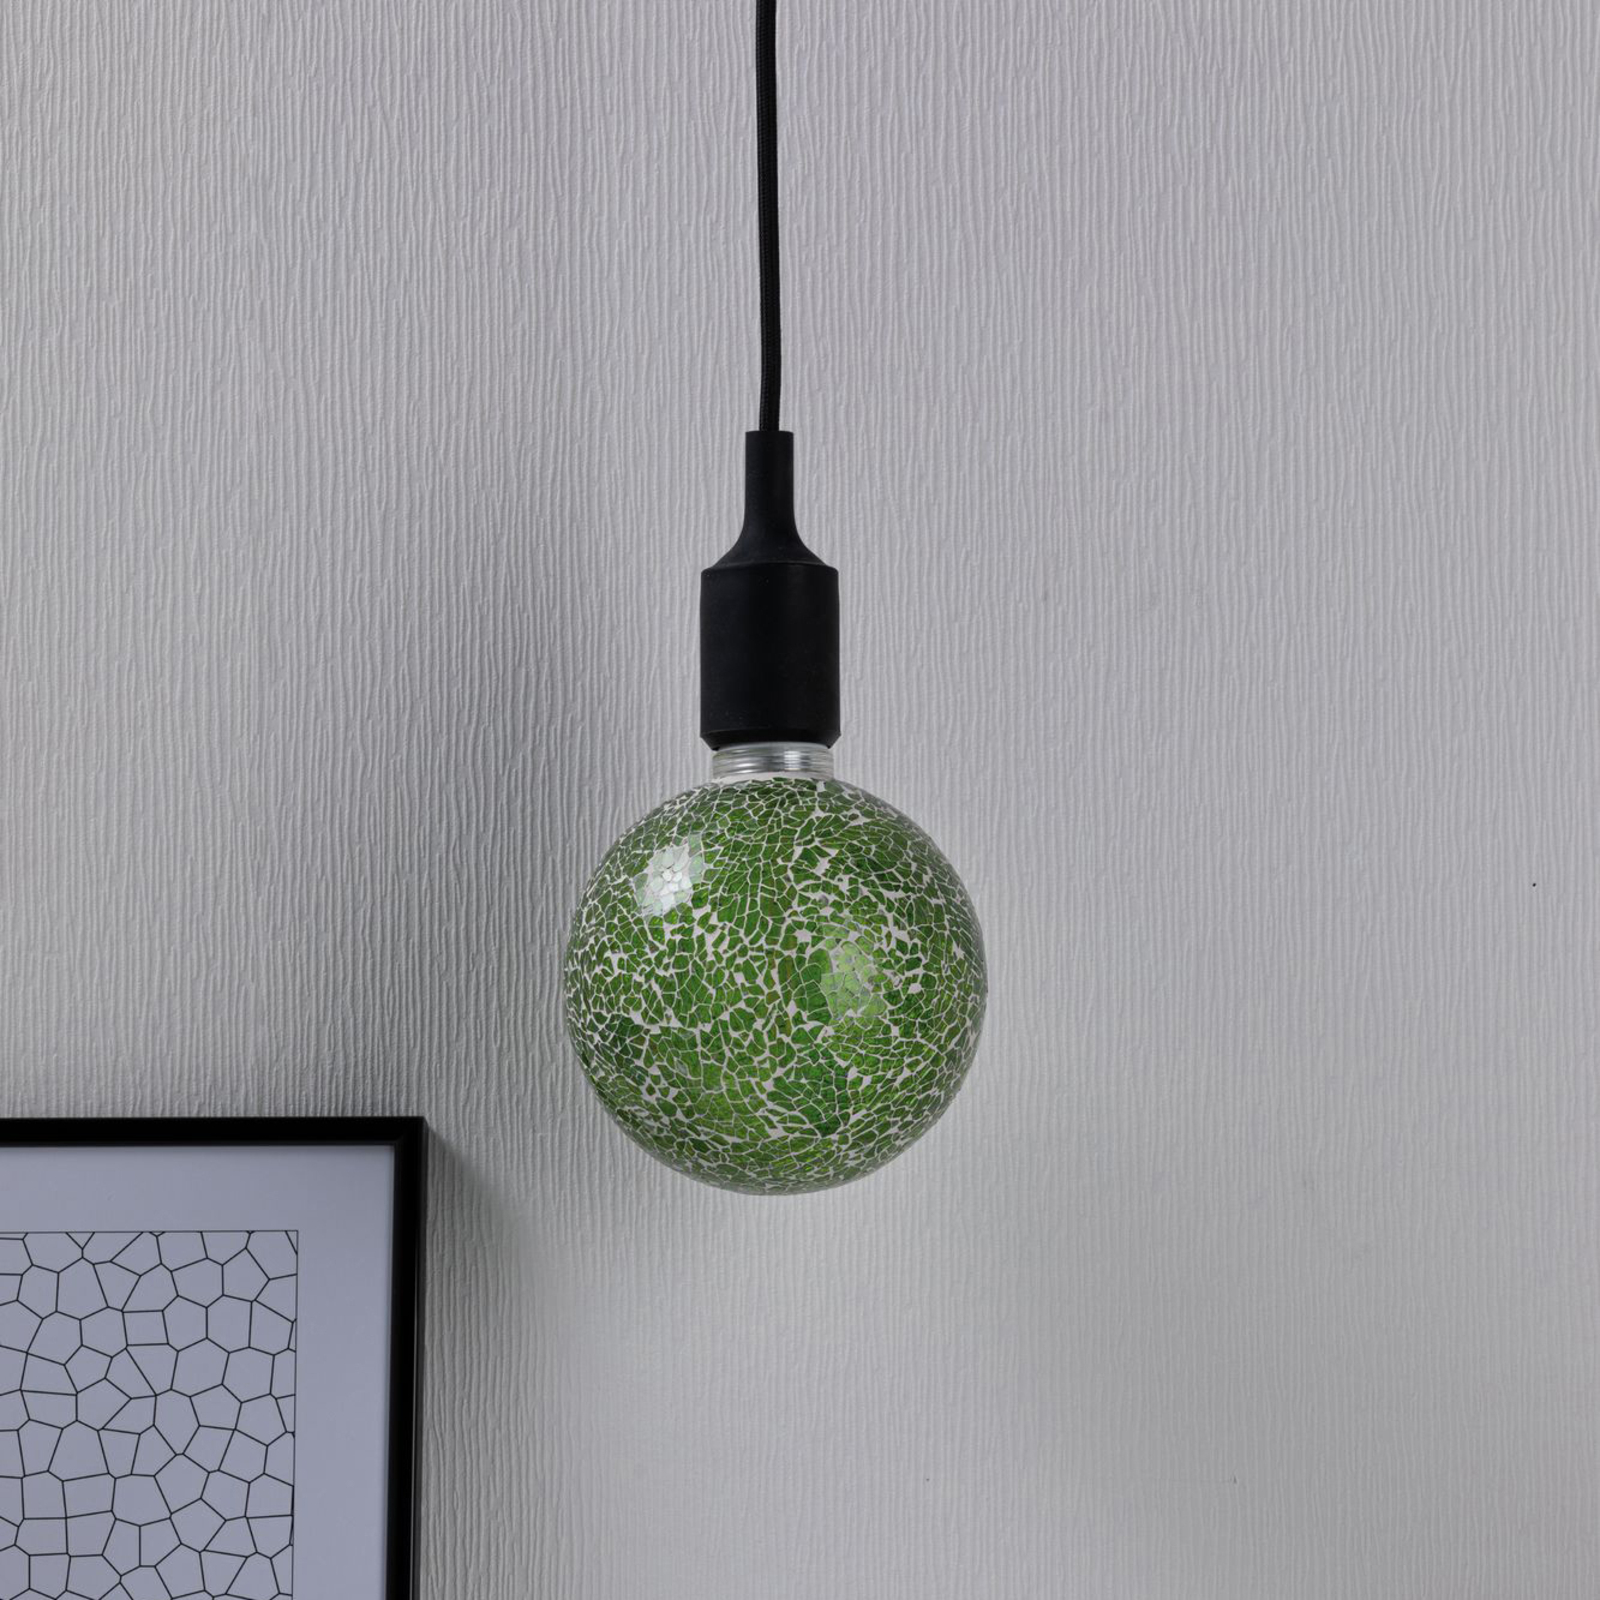 Paulmann E27 LED-pallo 5W Miracle Mosaic vihreä